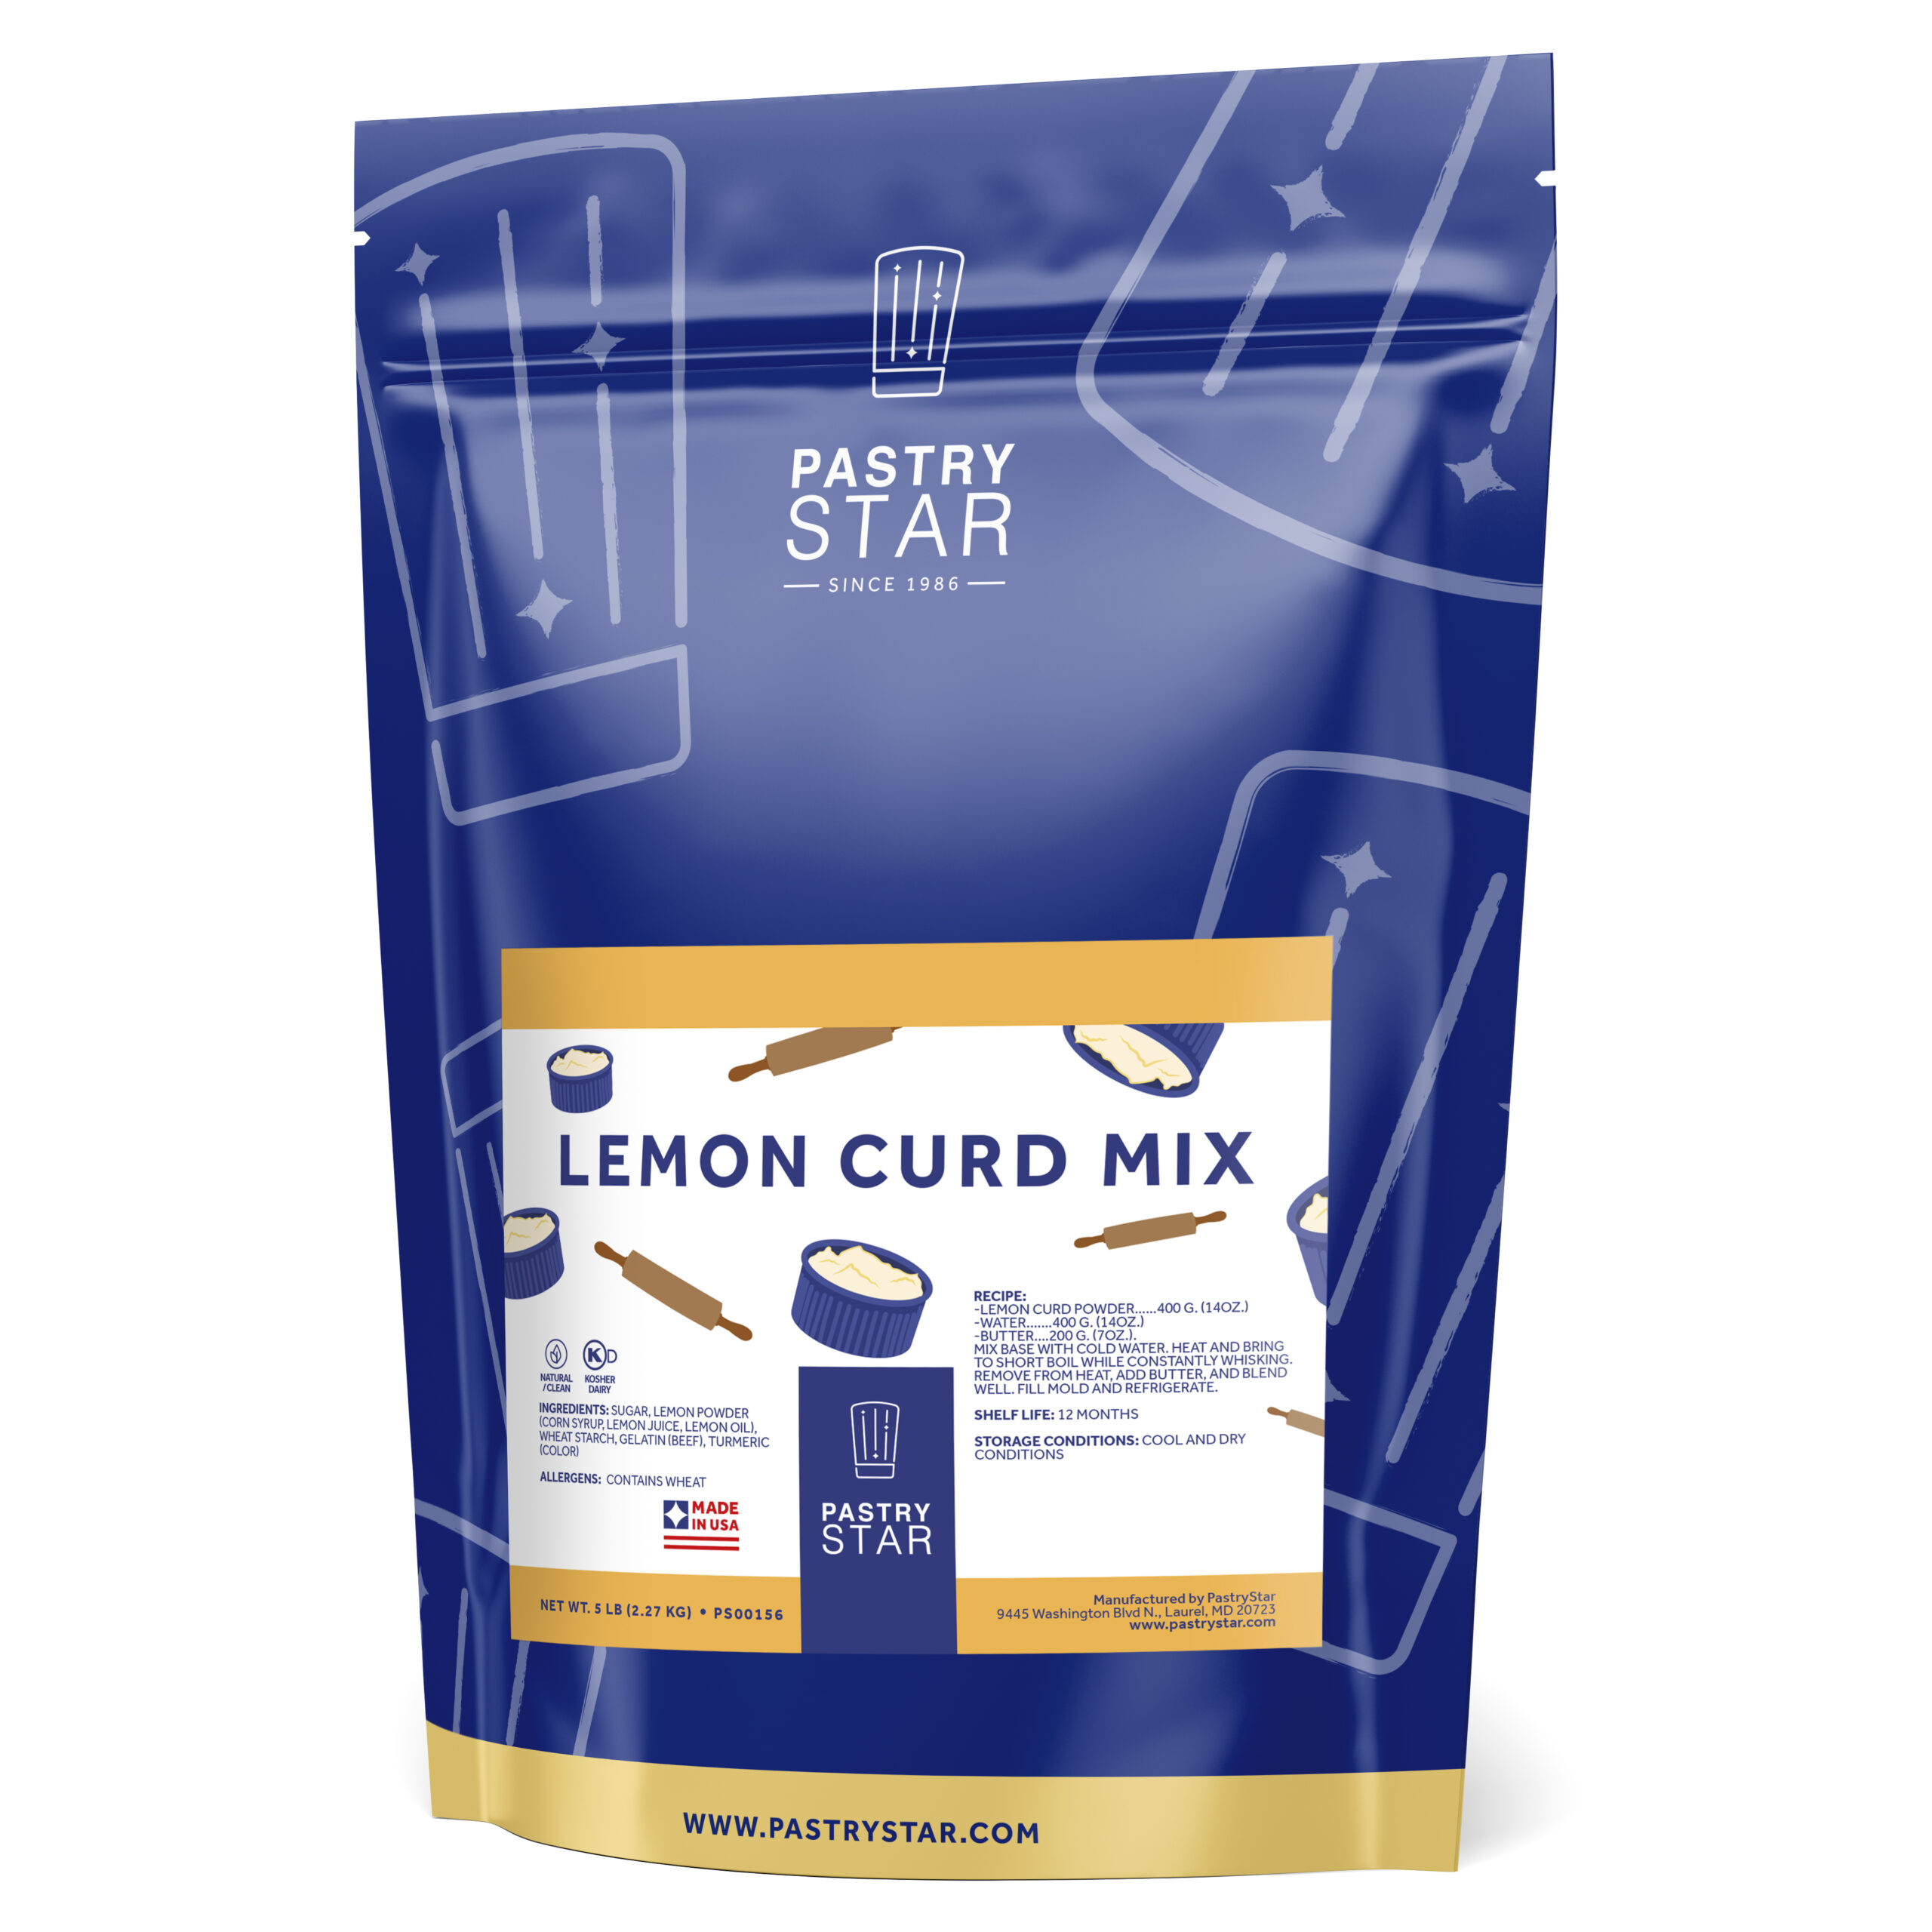 Lemon Curd Mix